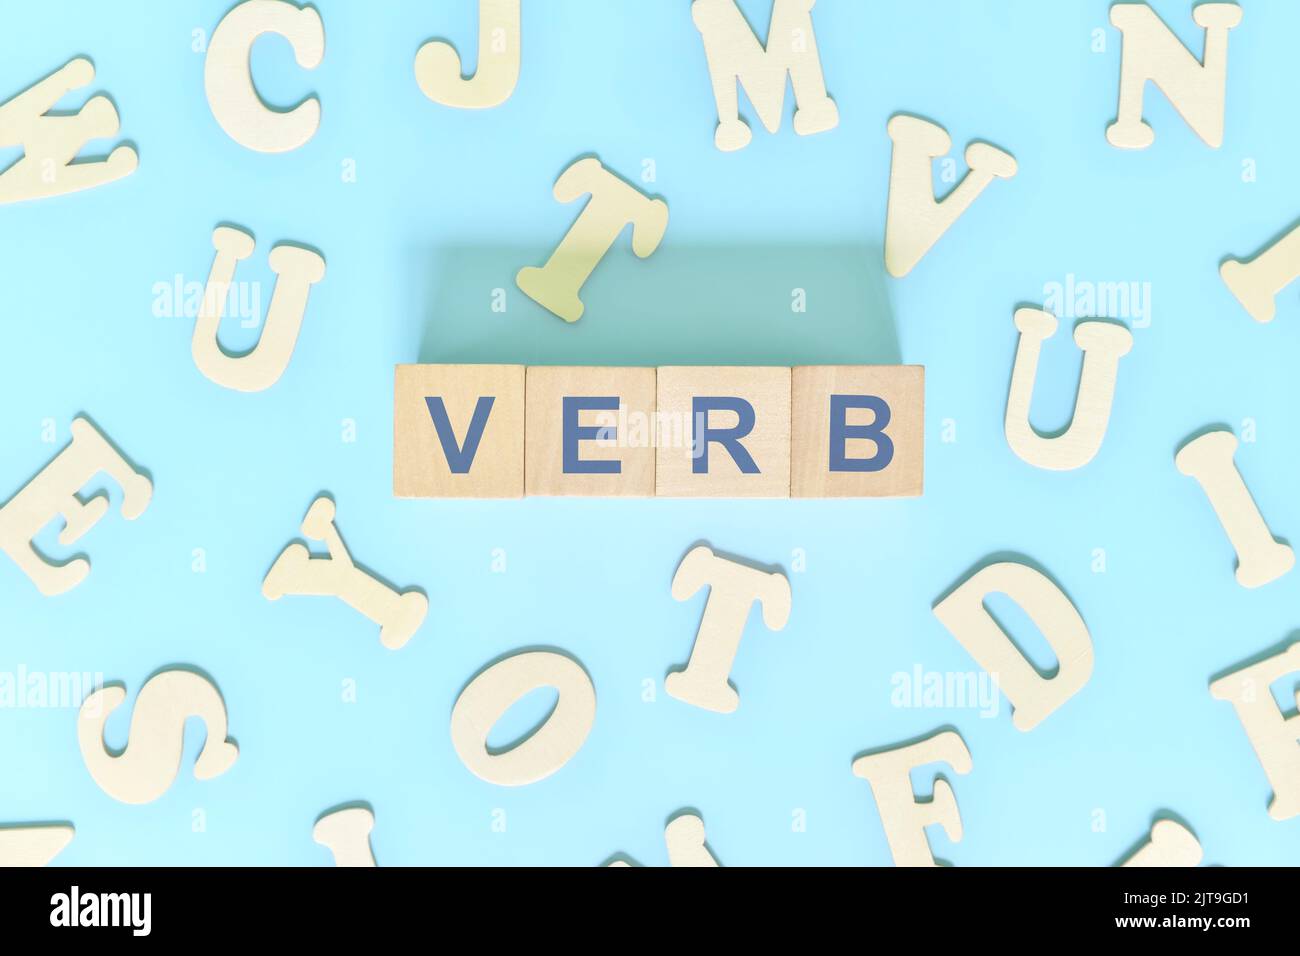 Verb-Konzept in englischer Grammatik und Unterrichtsstunde. Holzblöcke Typografie Wort flach lag auf blauem Hintergrund. Stockfoto